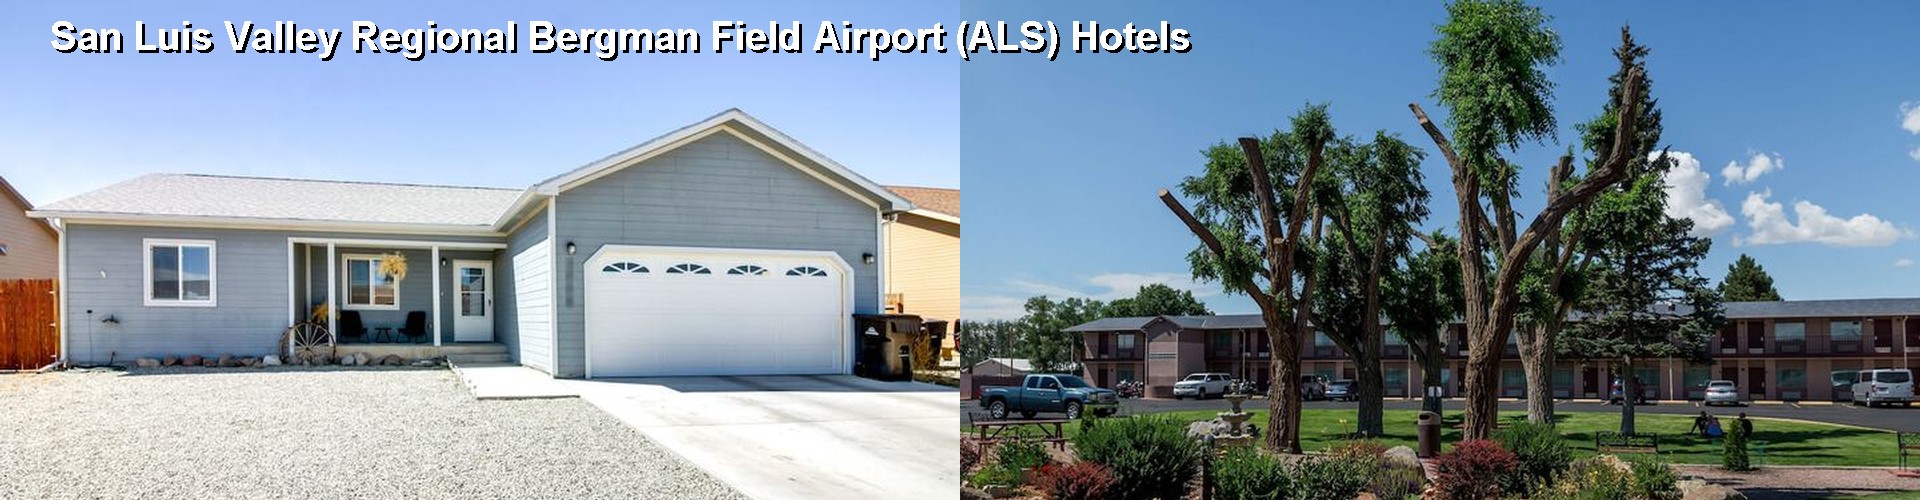 5 Best Hotels near San Luis Valley Regional Bergman Field Airport (ALS)